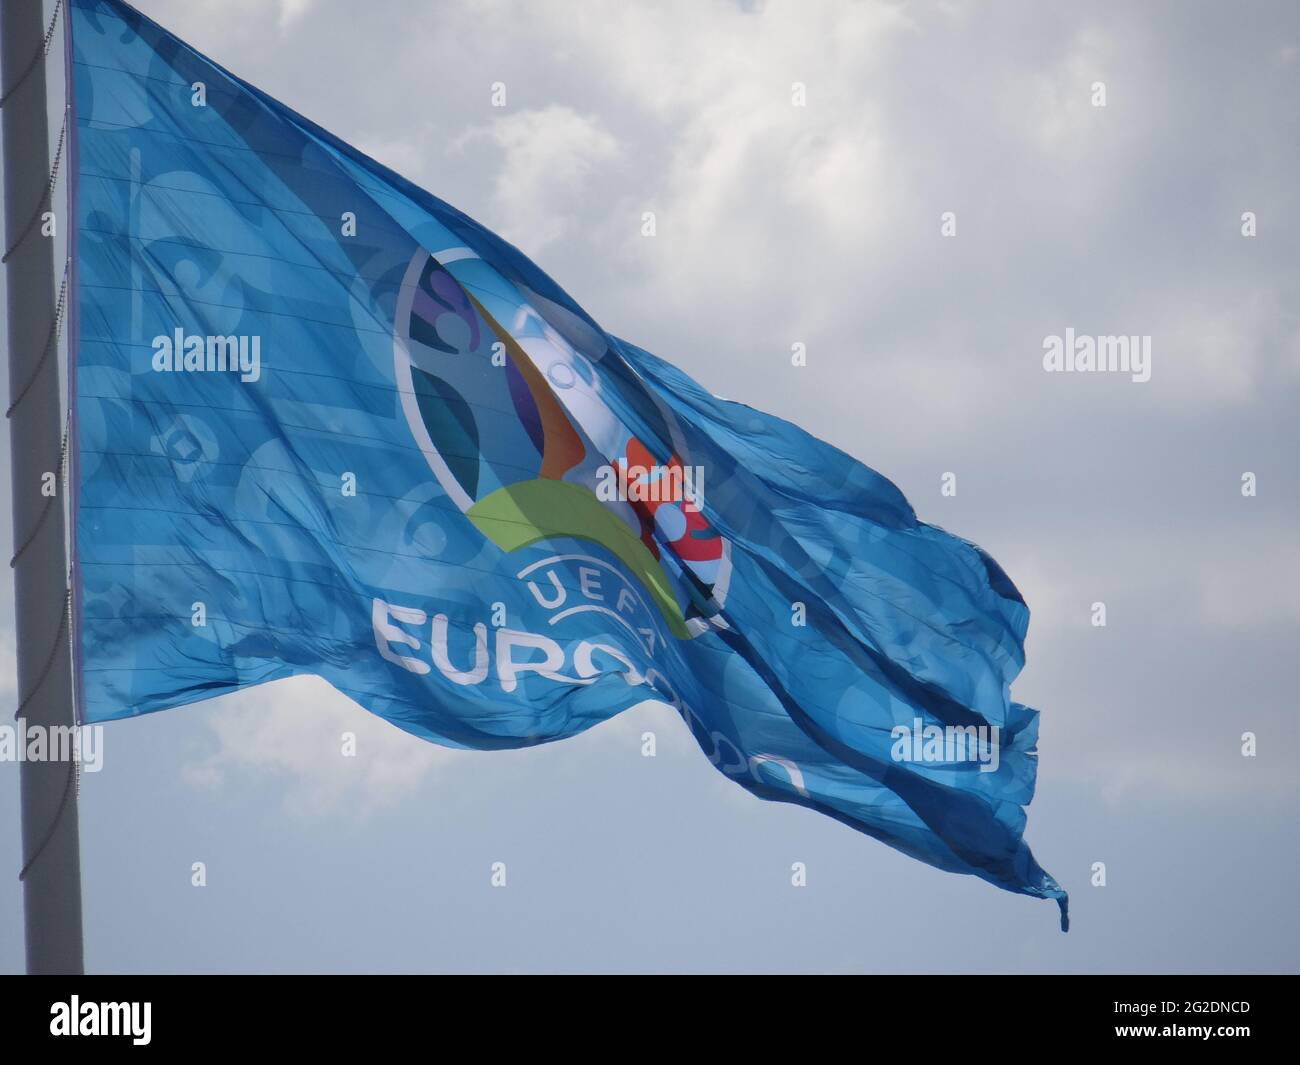 La bandiera gigante UEFA EURO 2020 è ambientato nella Gazprom Arena di San Pietroburgo, Russia. È quadrato è 600m, flagpole è 105m. La Gazprom Arena ospita alcune partite di Euro 2020 a San Pietroburgo, in Russia Foto Stock